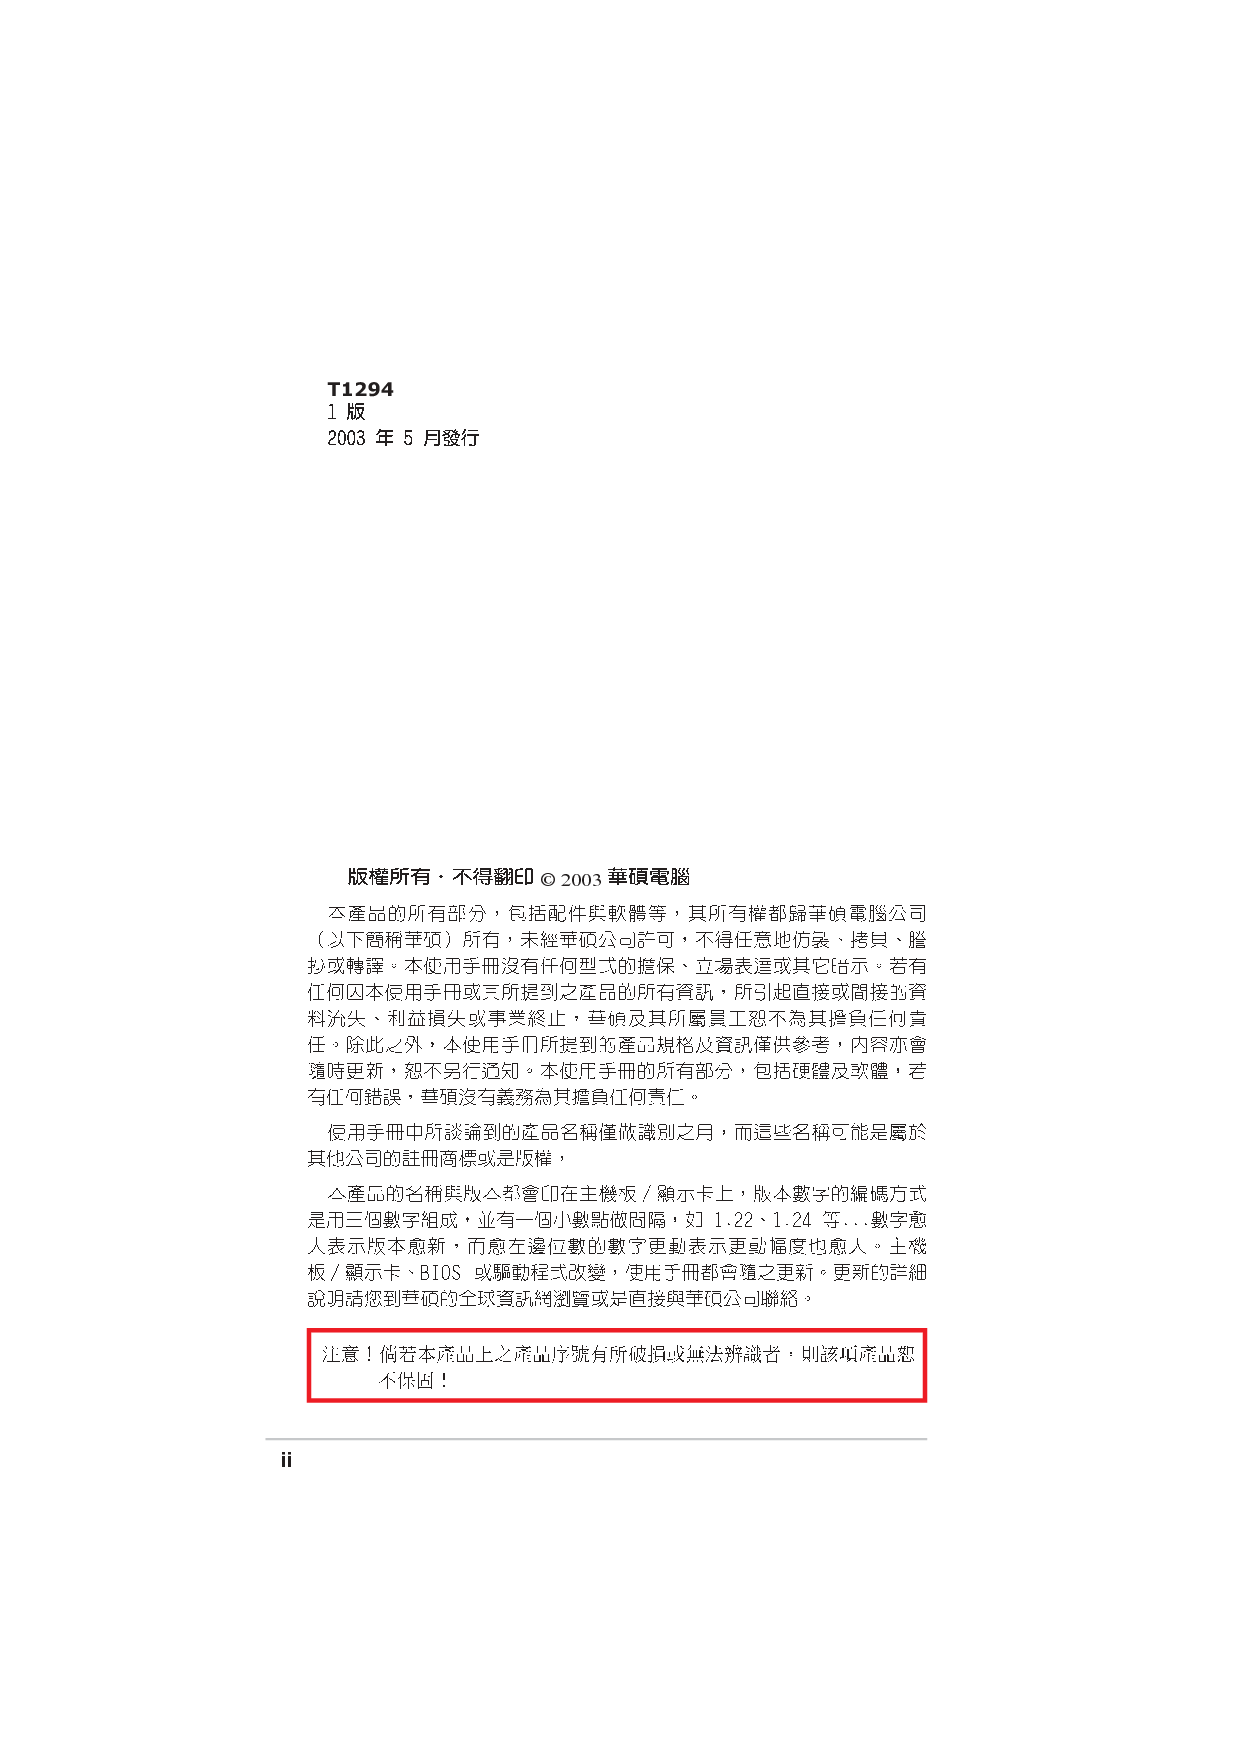 华硕 Asus A7N8X-X 用户手册 第1页